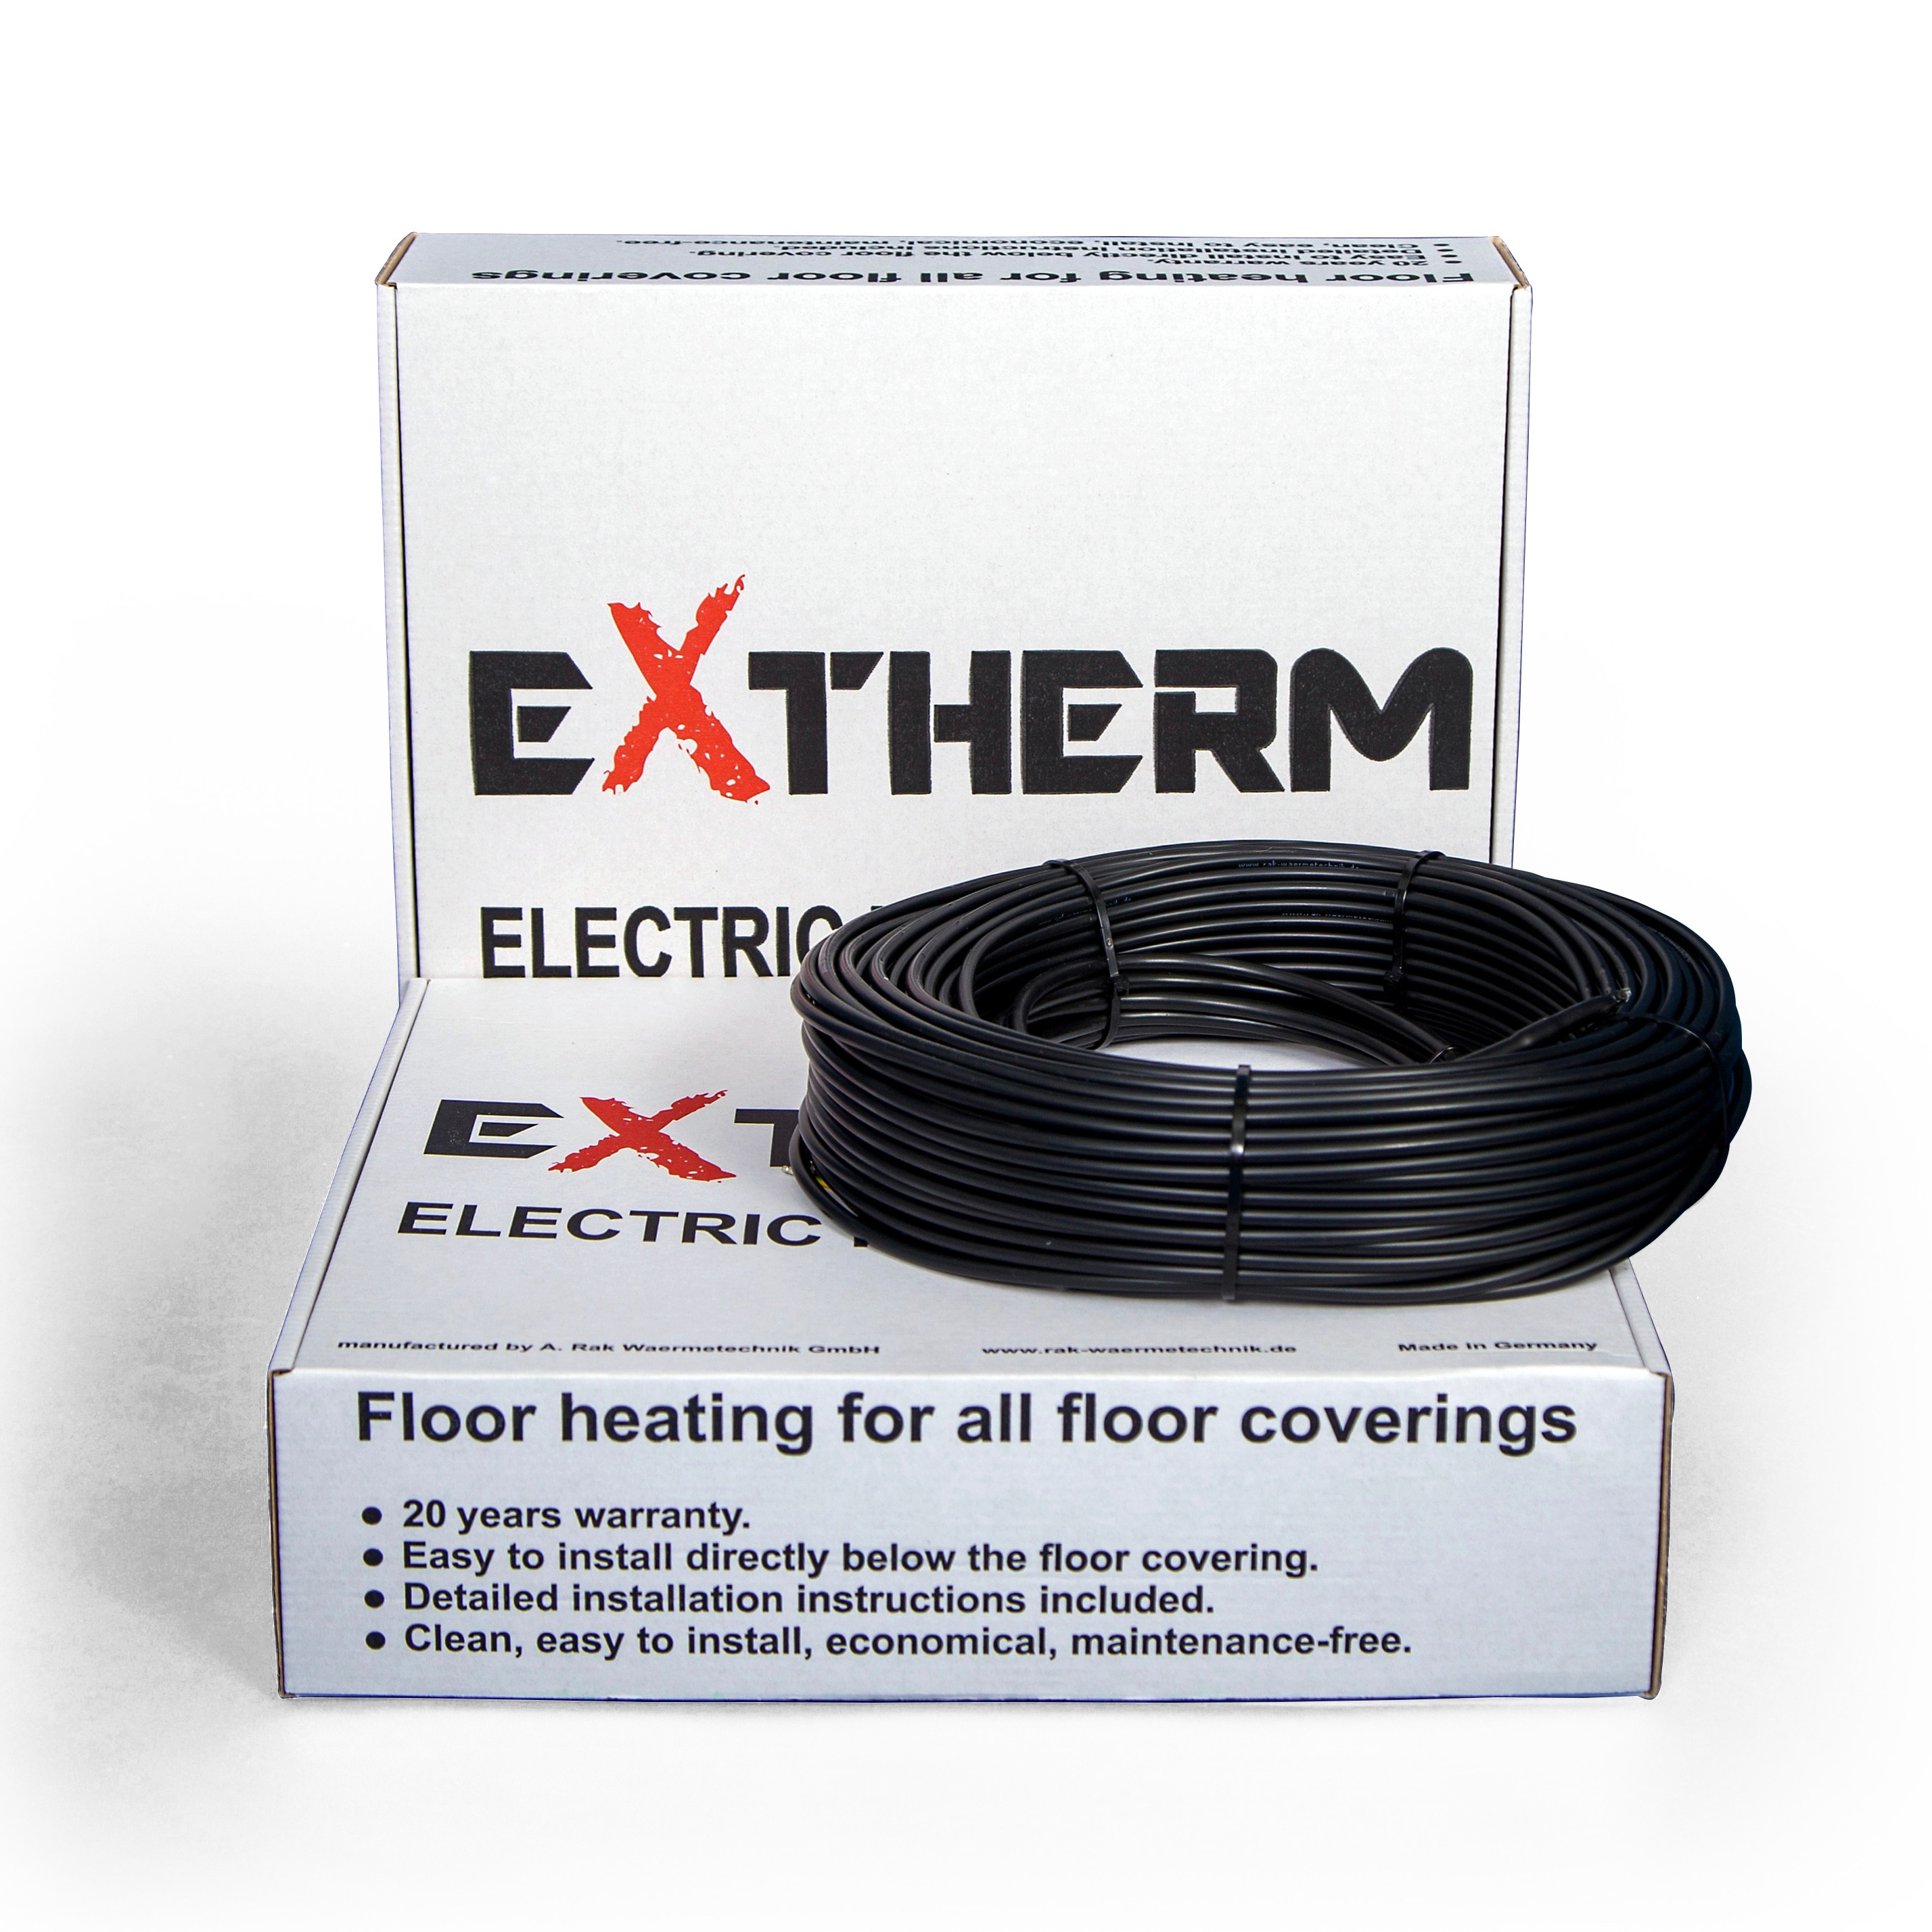 Нагревательный кабель Extherm ETT ECO 30-840